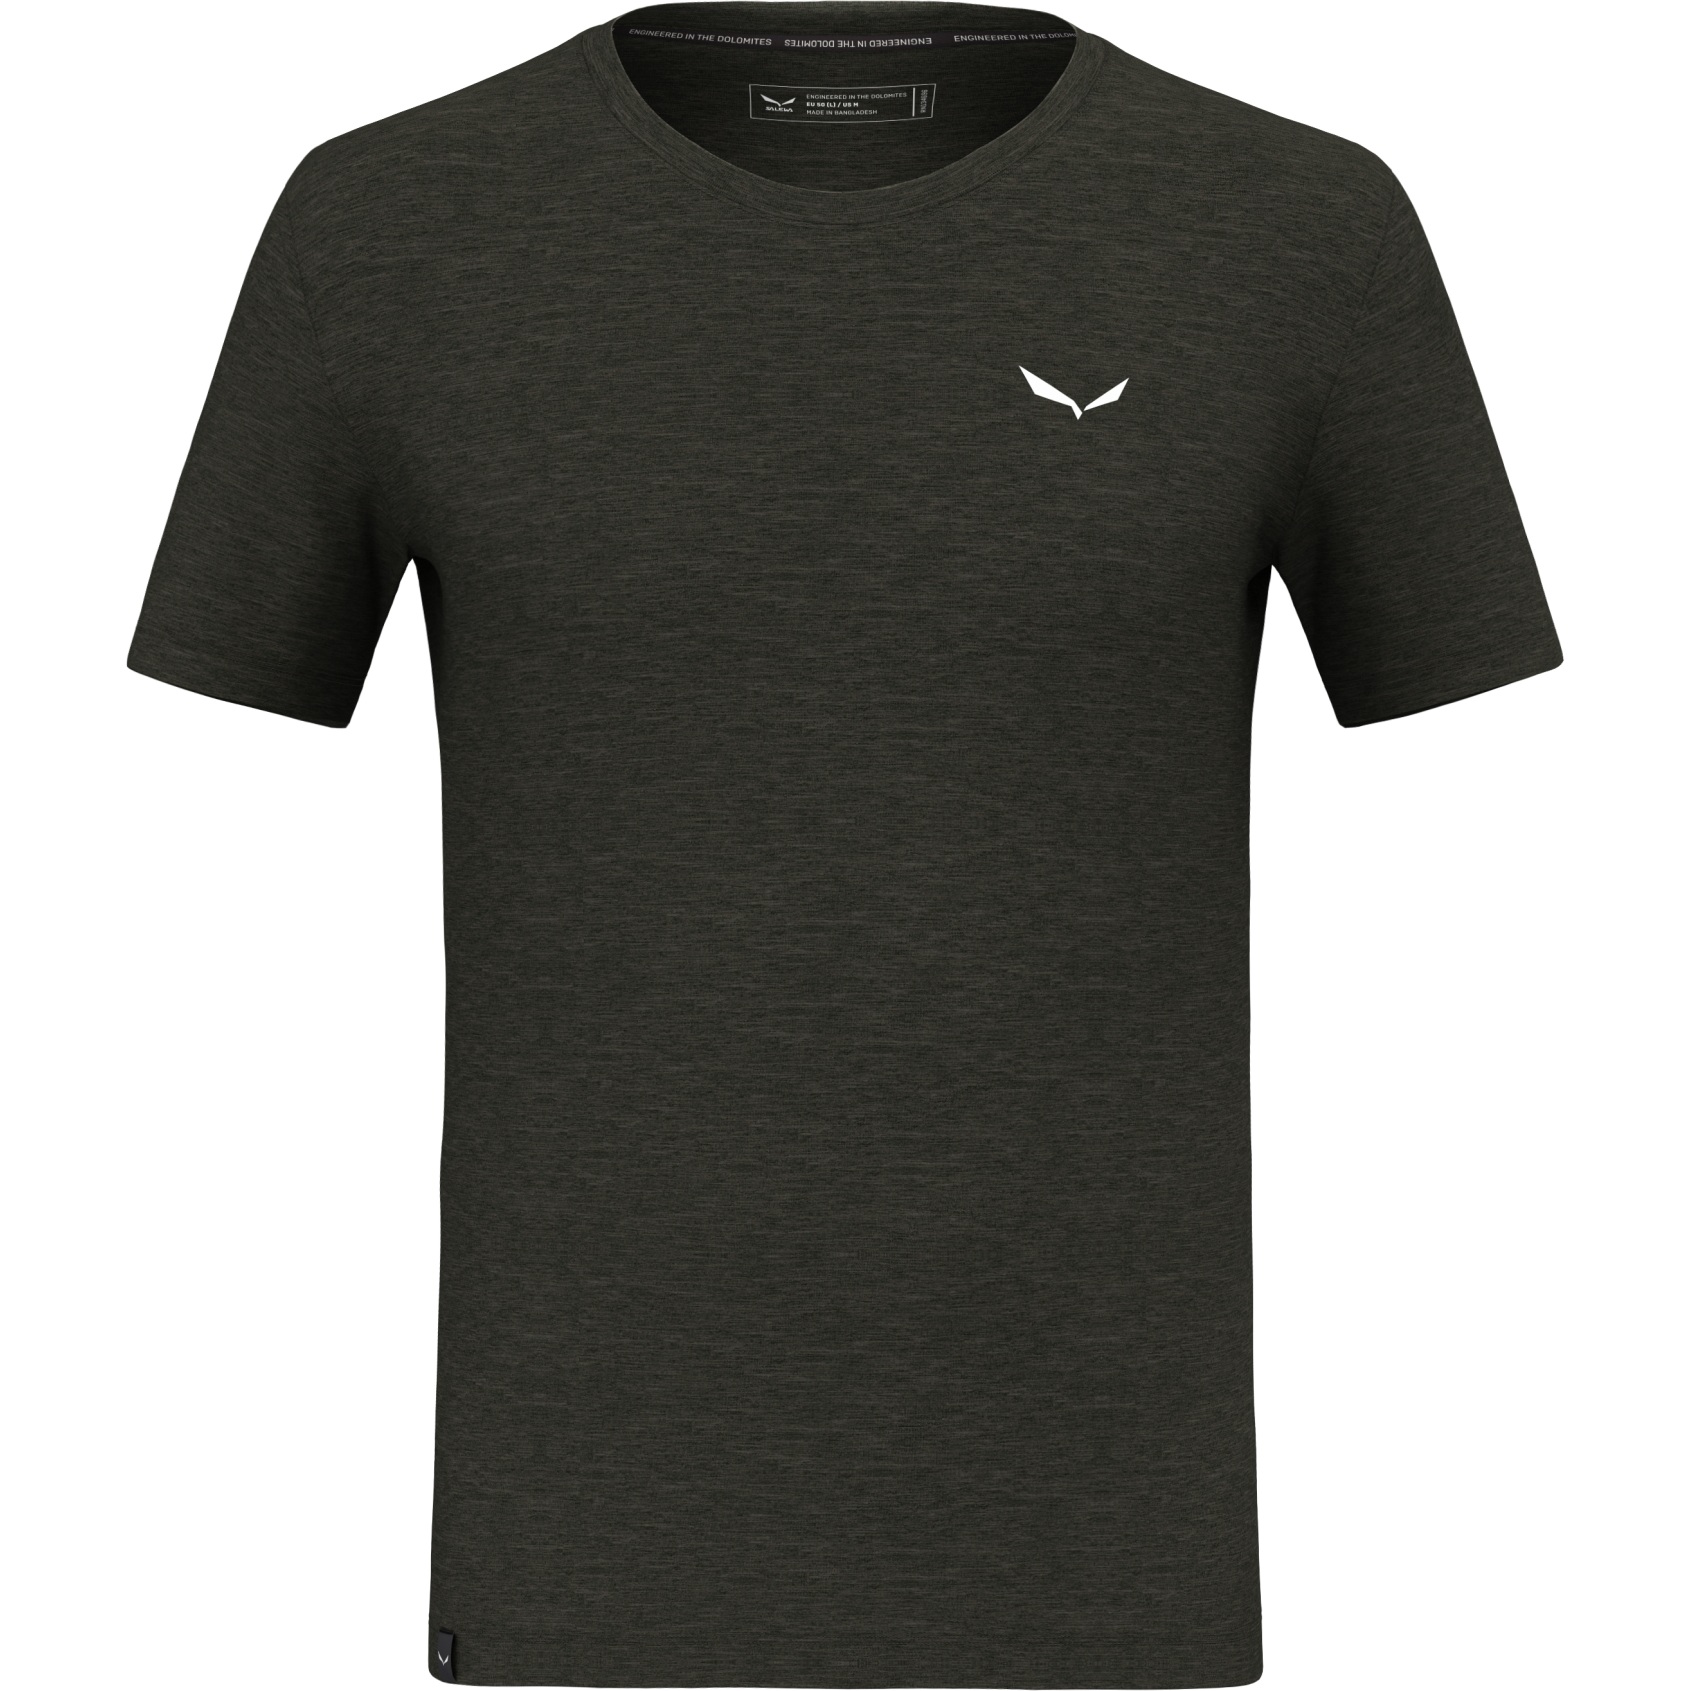 Salewa Eagle Minilogo Alpine Merino T-Shirt Men - dark olive 5280 | BIKE24